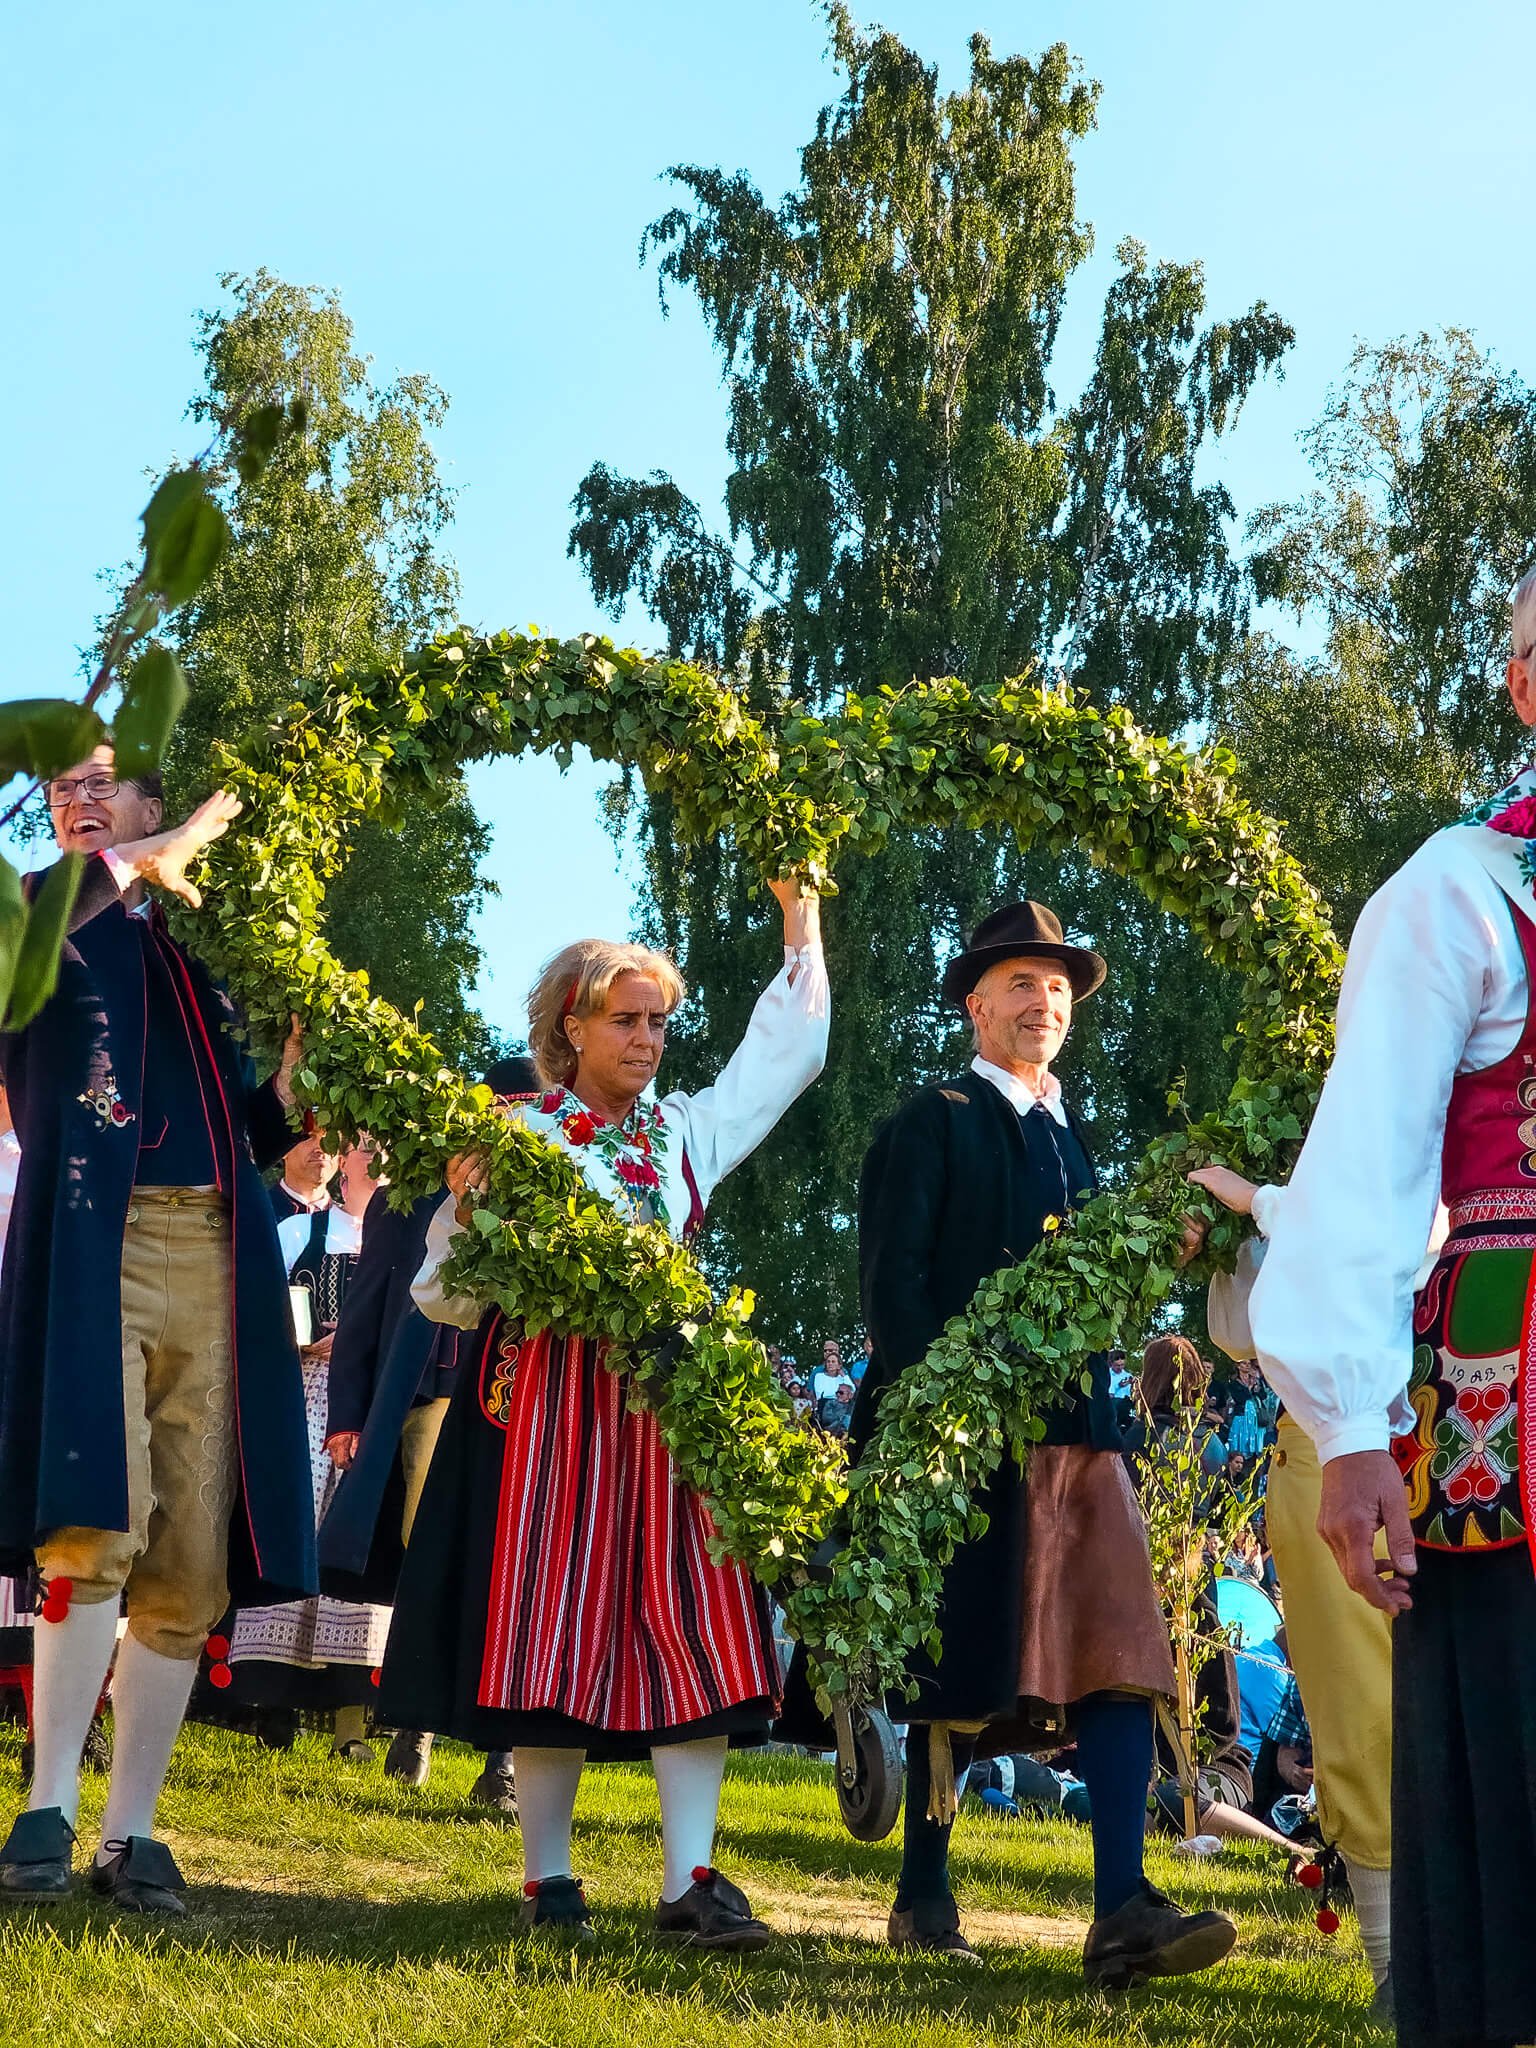 Midsummer celebrated in Sweden